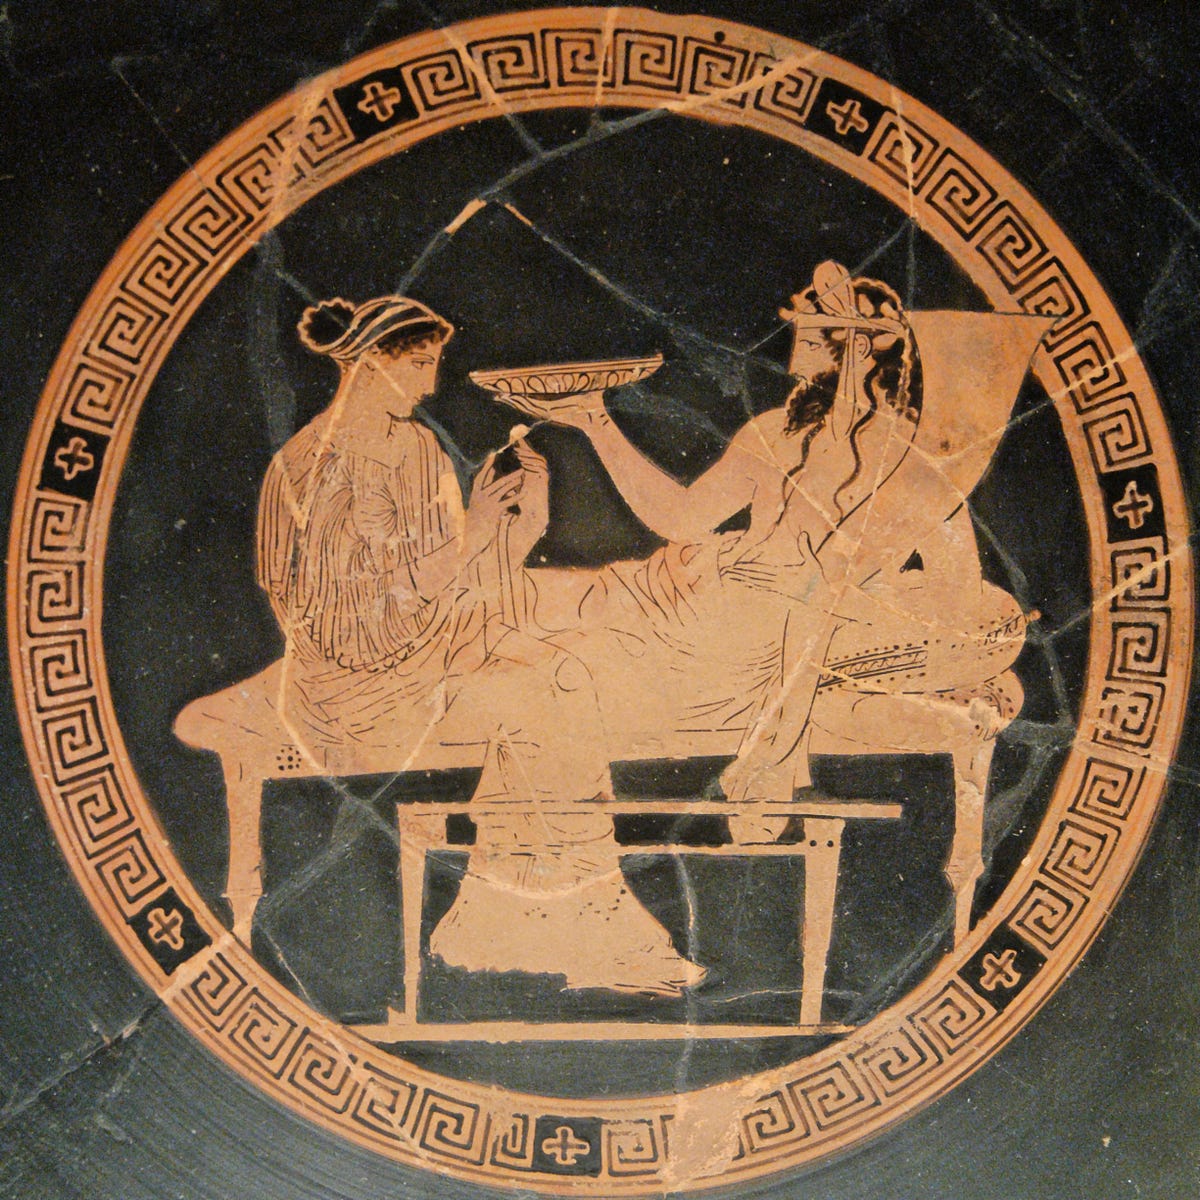 Cathiane  Hades, Hades and persephone, Hades greek mythology